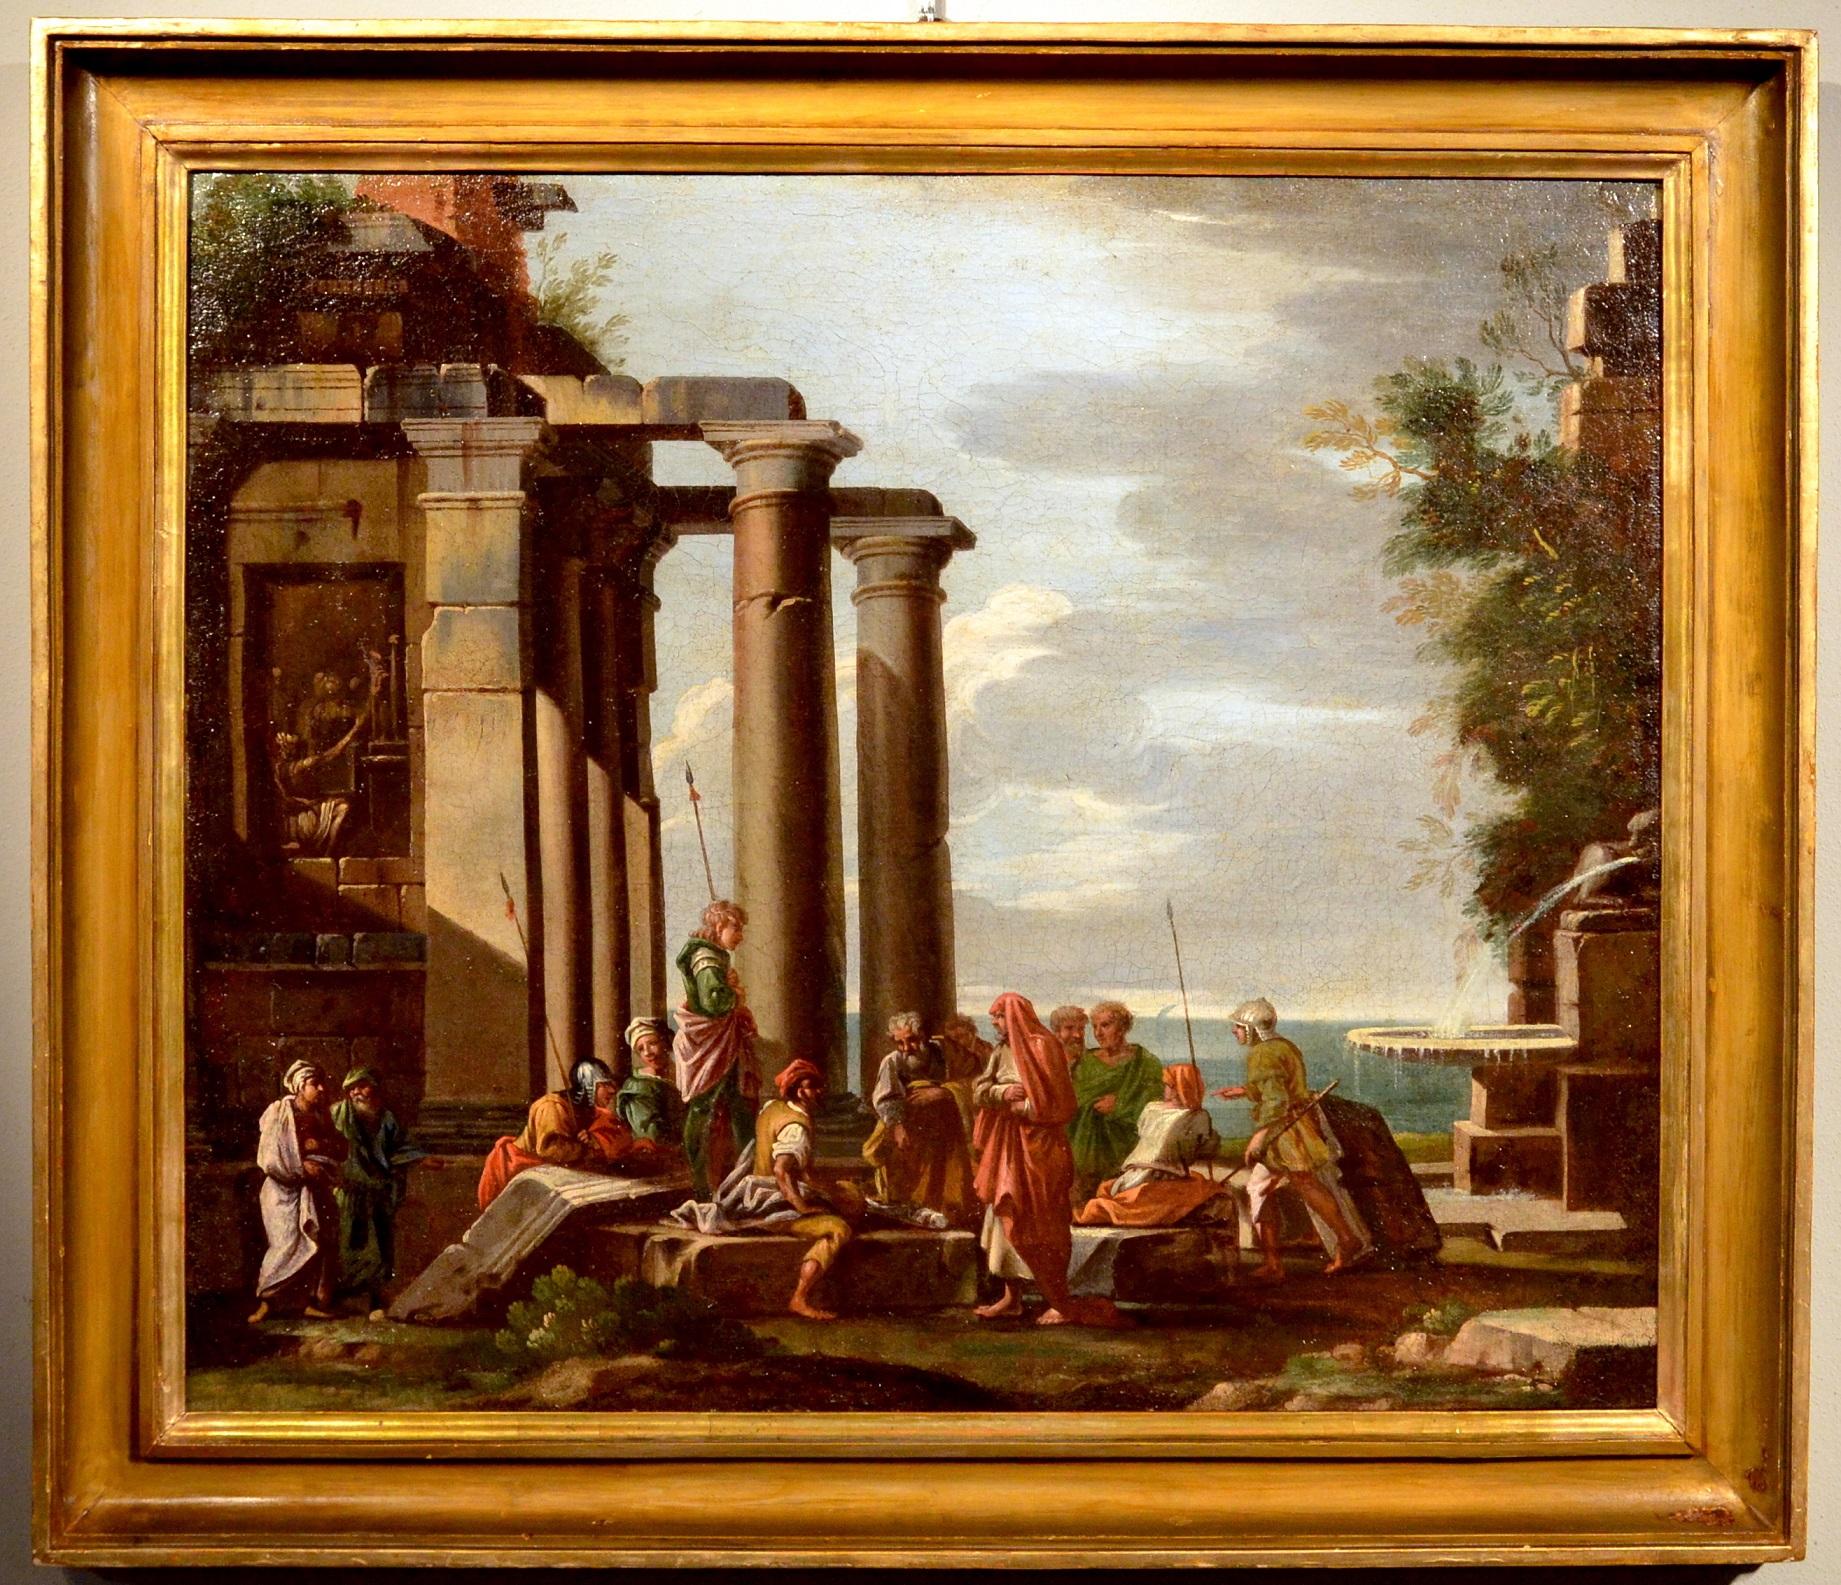 Ghisolfi Gemälde Öl auf Leinwand, alter Meister, 17. Jahrhundert, architektonische Capriccio-Kunst – Painting von Giovanni Ghisolfi (Milan 1623 - 1683)